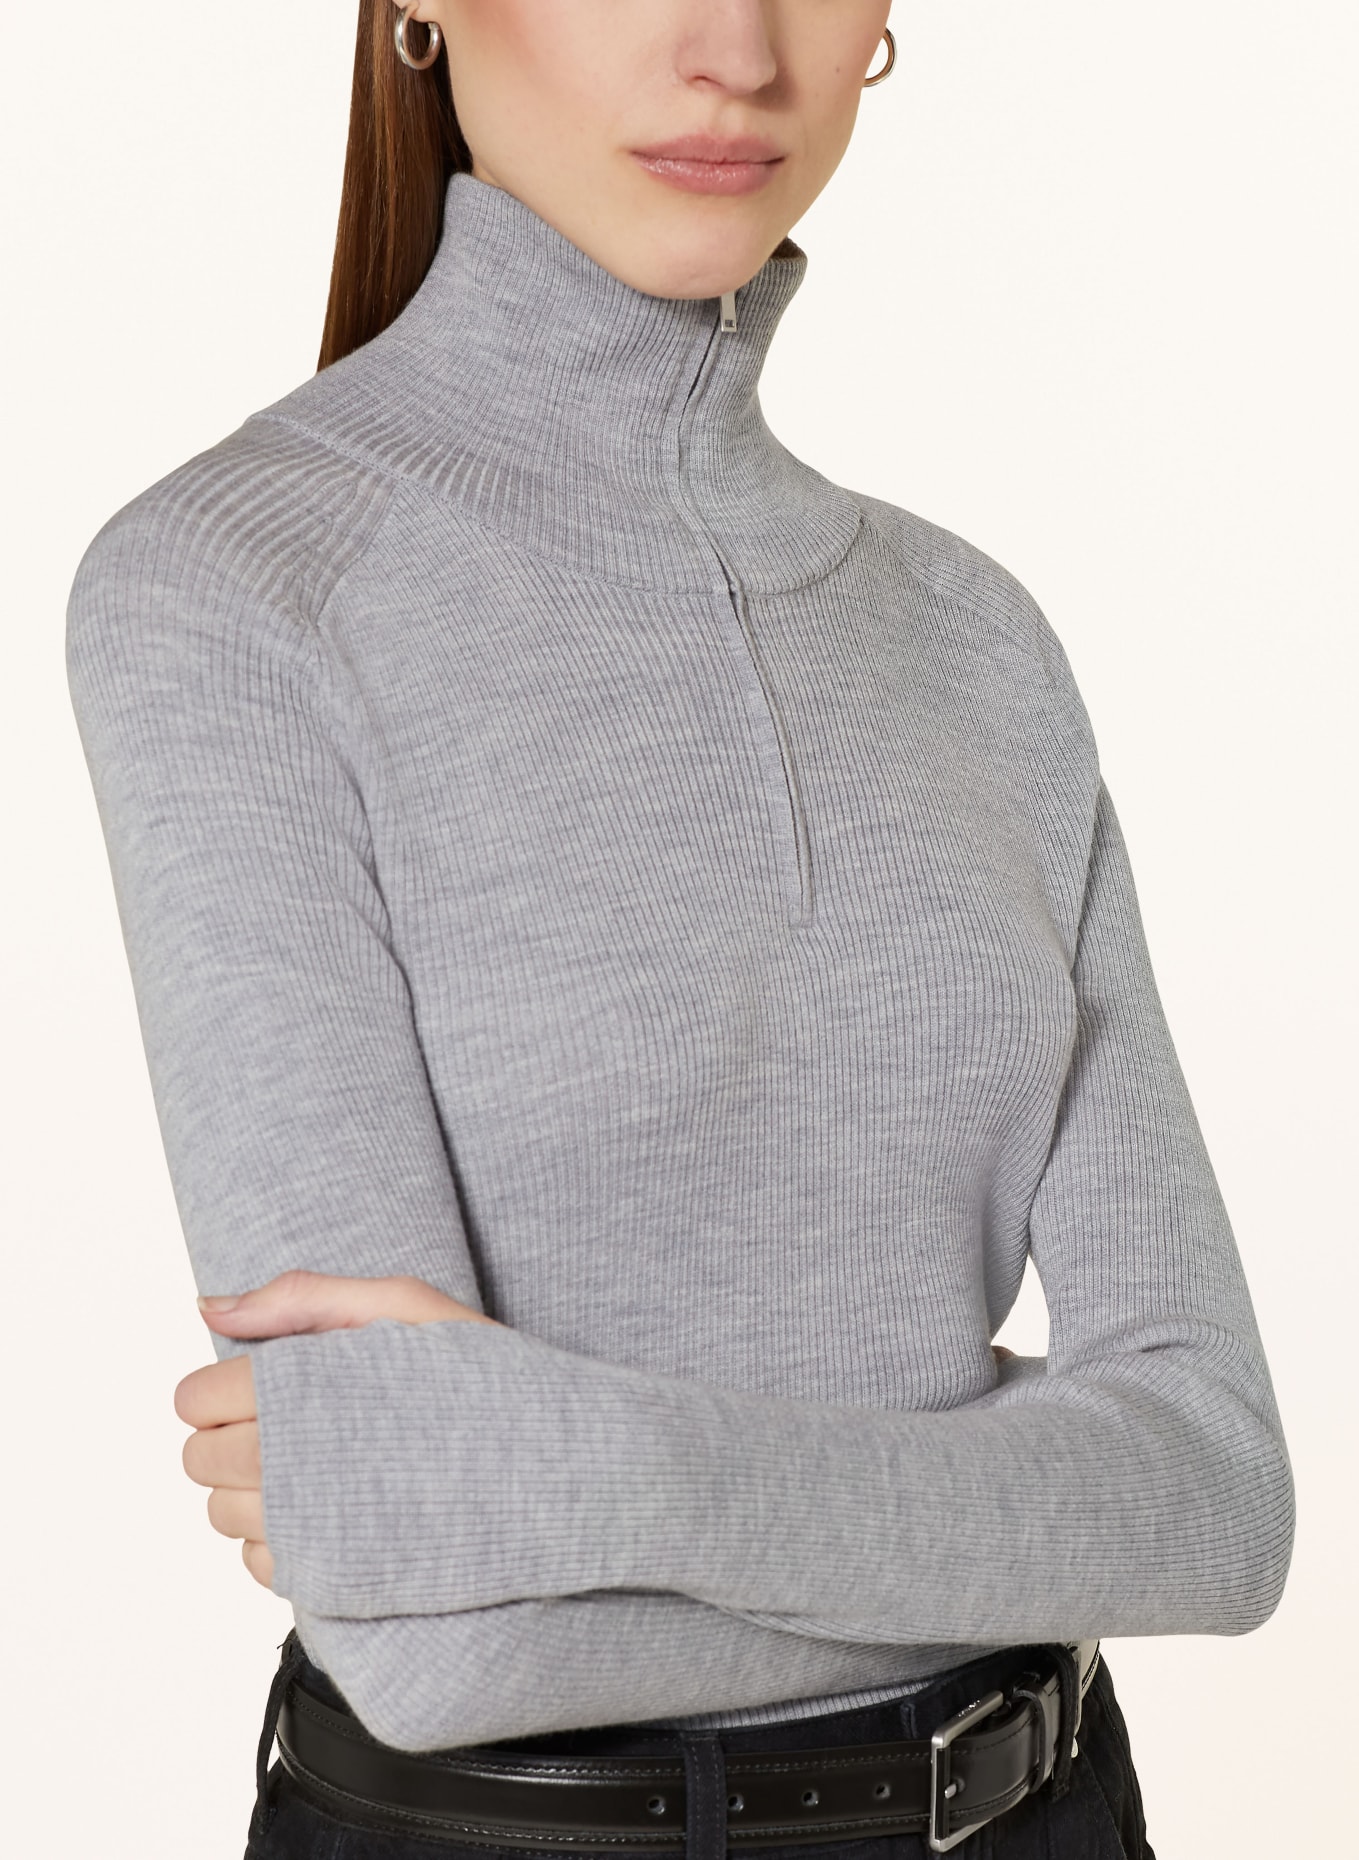 COS Half-zip sweater, Color: GRAY (Image 4)